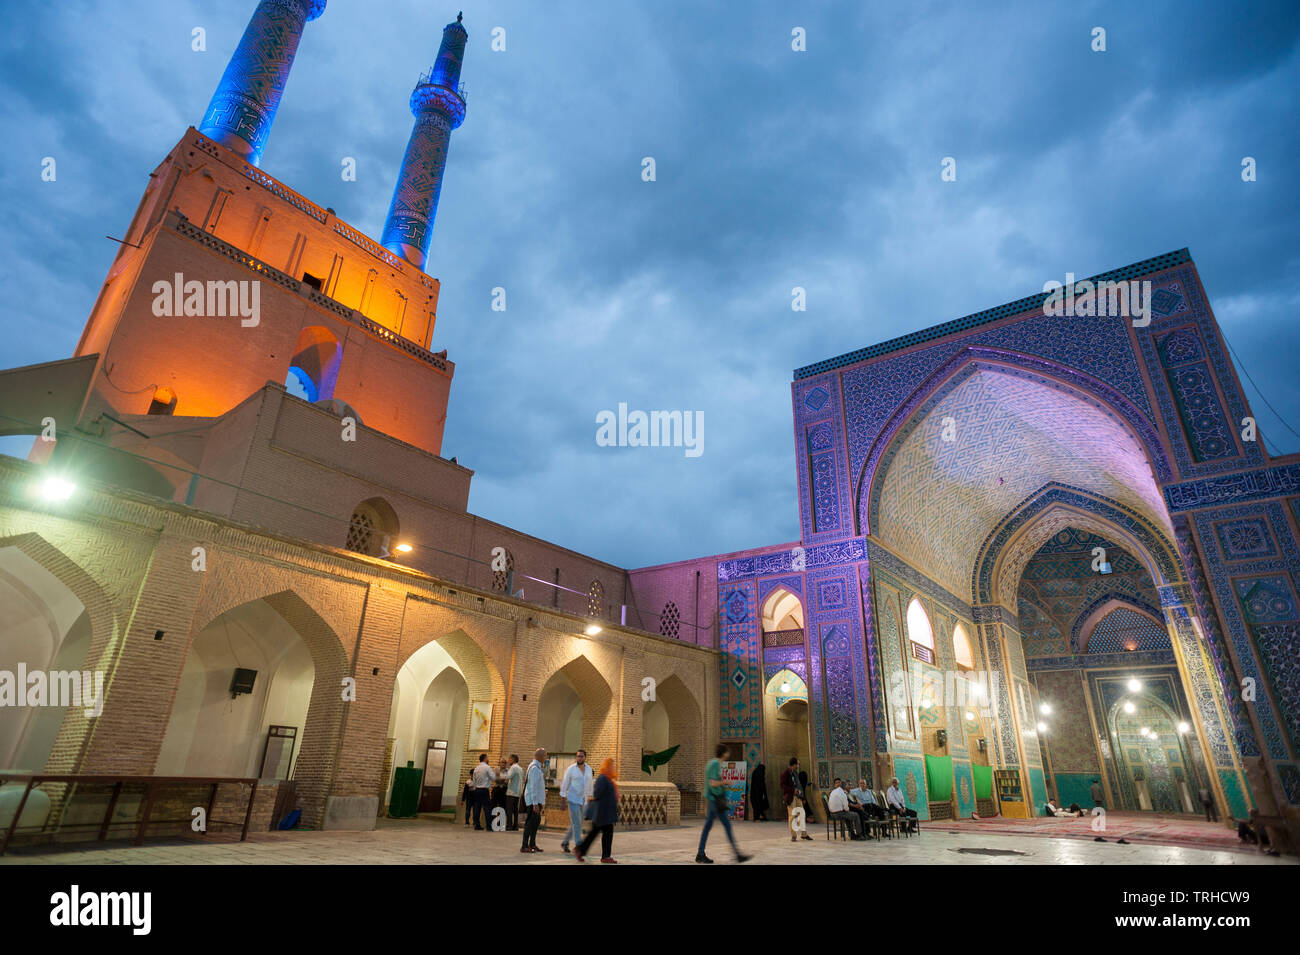 Abend in der Masjid-e-Jame Moschee aus dem 14. Jahrhundert in Yazd; eine der berühmtesten Moscheen im Iran, bekannt für ihre Mosaikfliesen. Iran. Stockfoto